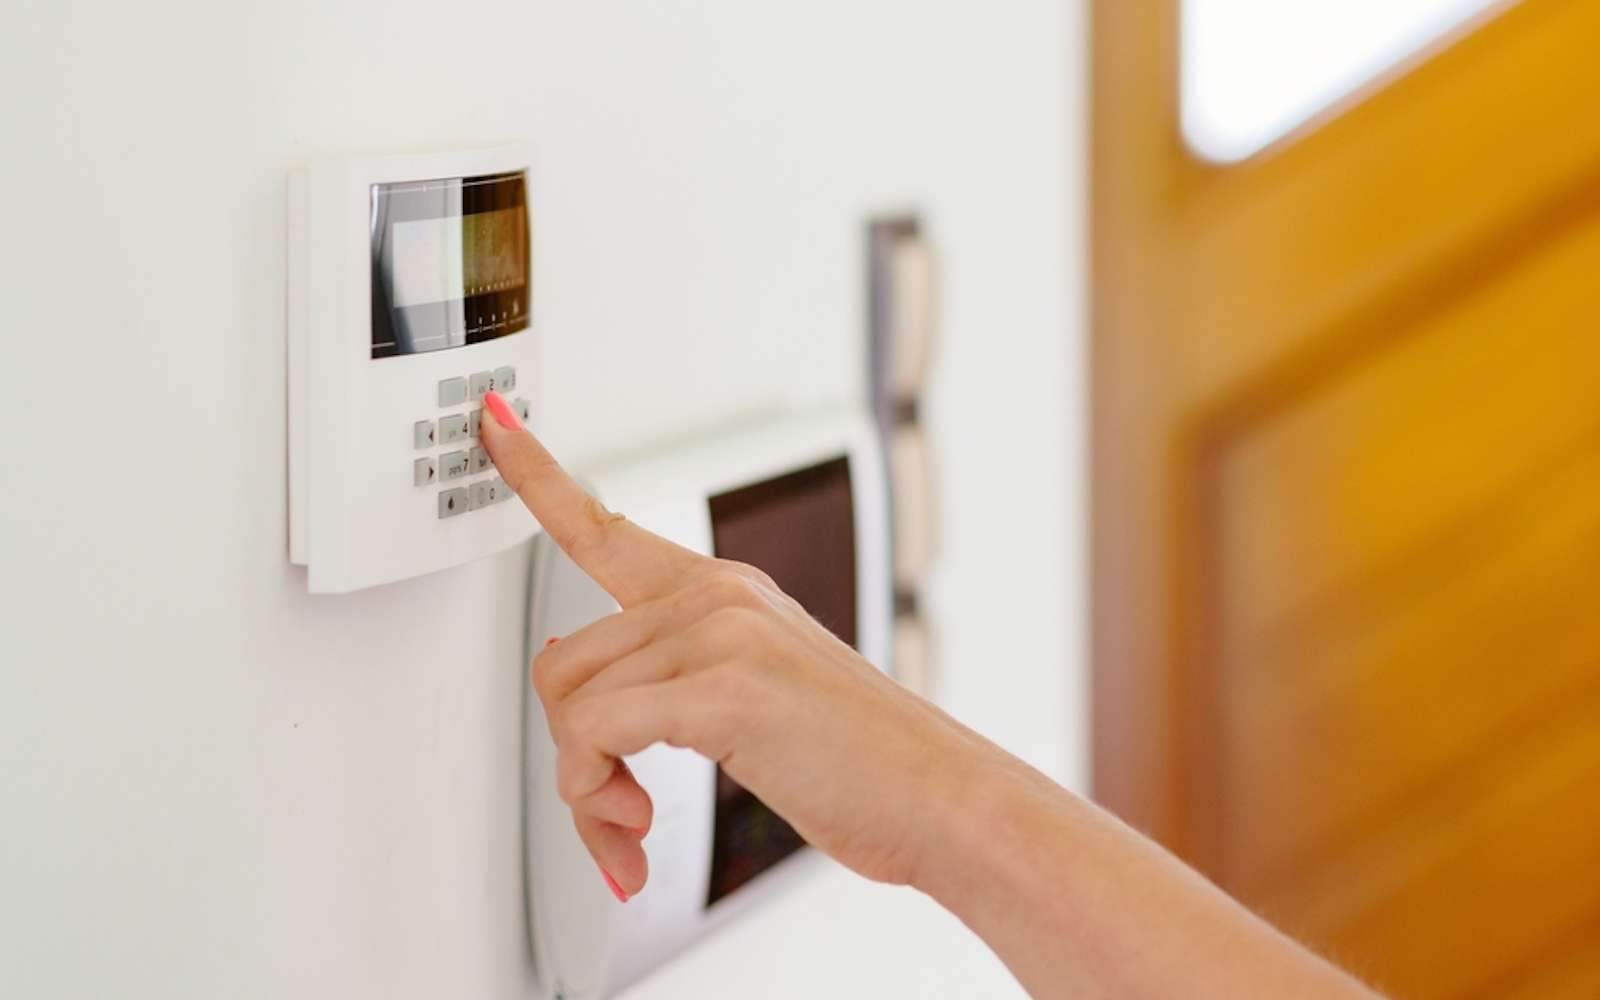 L’offre de systèmes d’alarme Verisure pour protéger votre logement. (Source : Shutterstock)